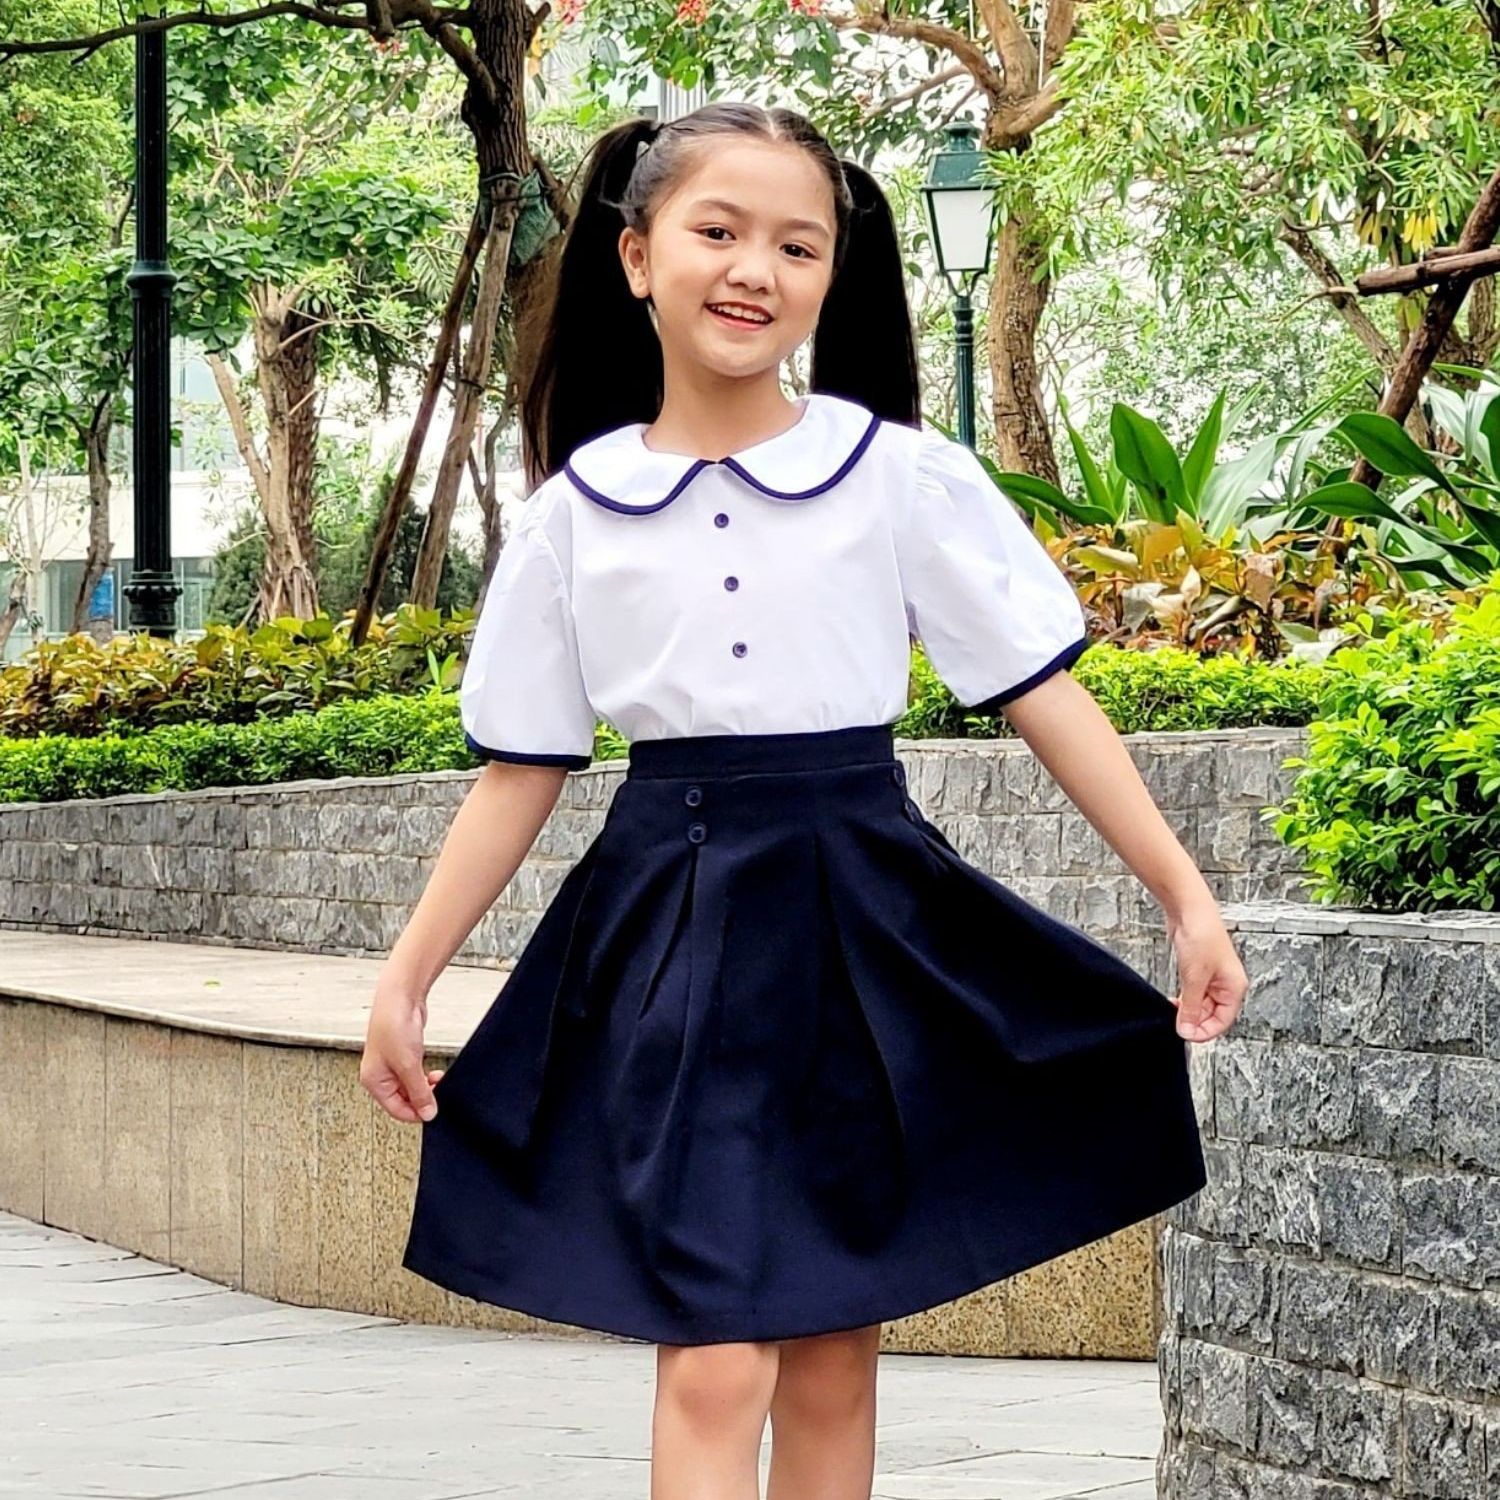 Với mỗi cấp học nên chọn mẫu đồng phục học sinh như thế nào  Việt Tiến   Miễn phí giao hàng toàn quốc  Đại lý Việt Tiến TpHCM